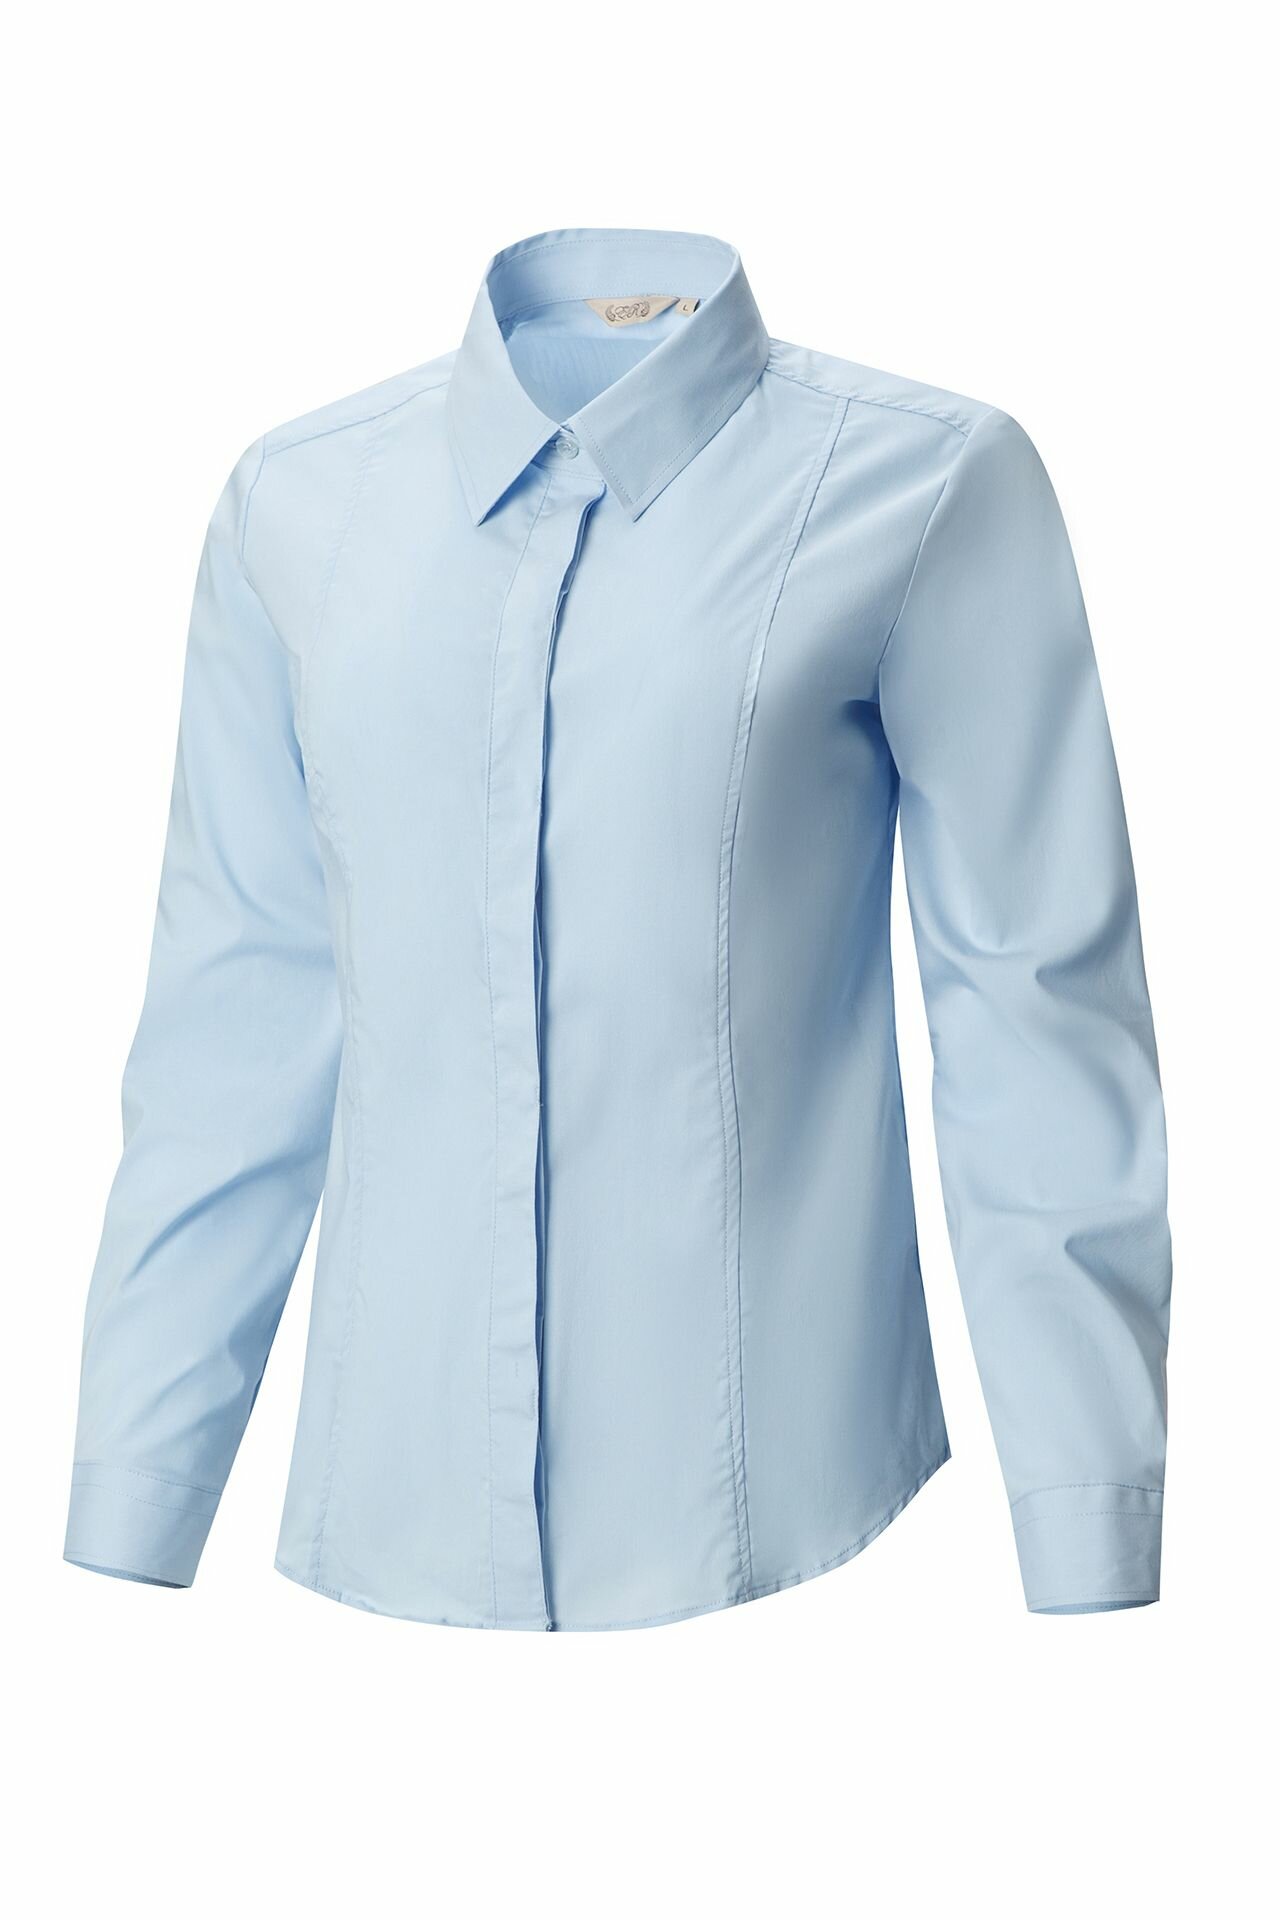 Рубашка женская El-Risto удлиненная голубой 54(4XL)